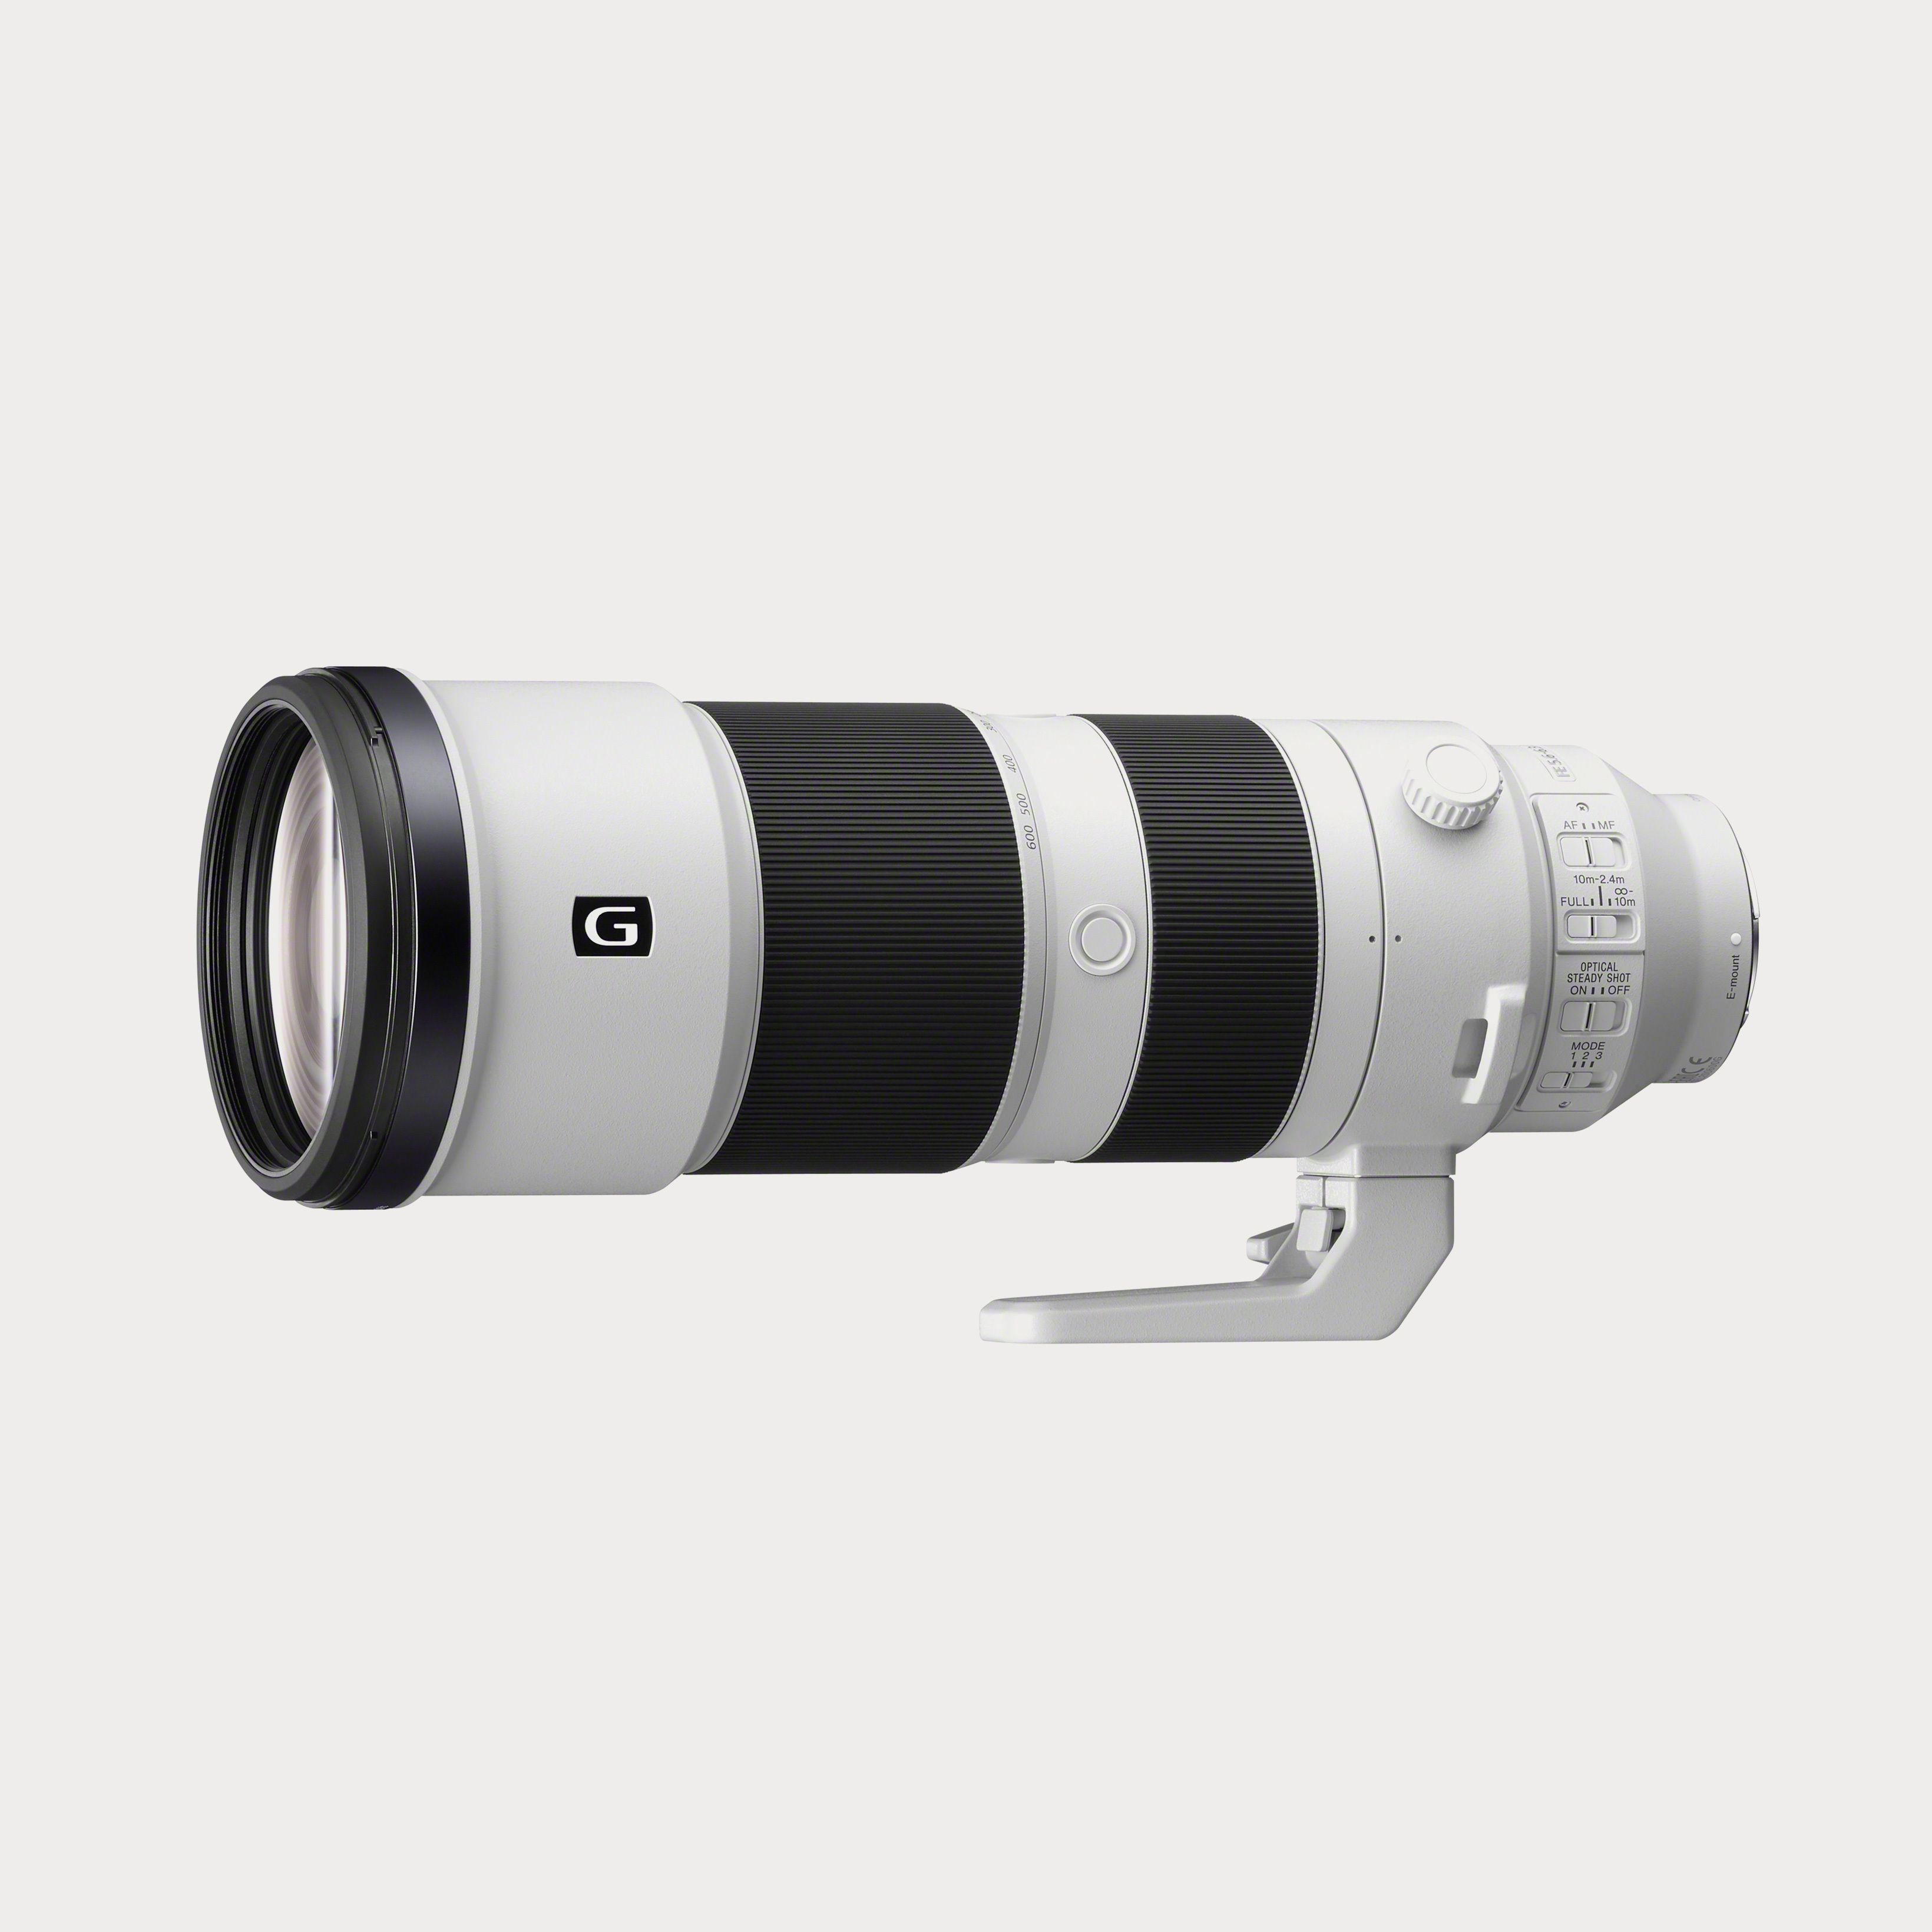 FE 70-200mm f/4 G OSS Lens | Moment